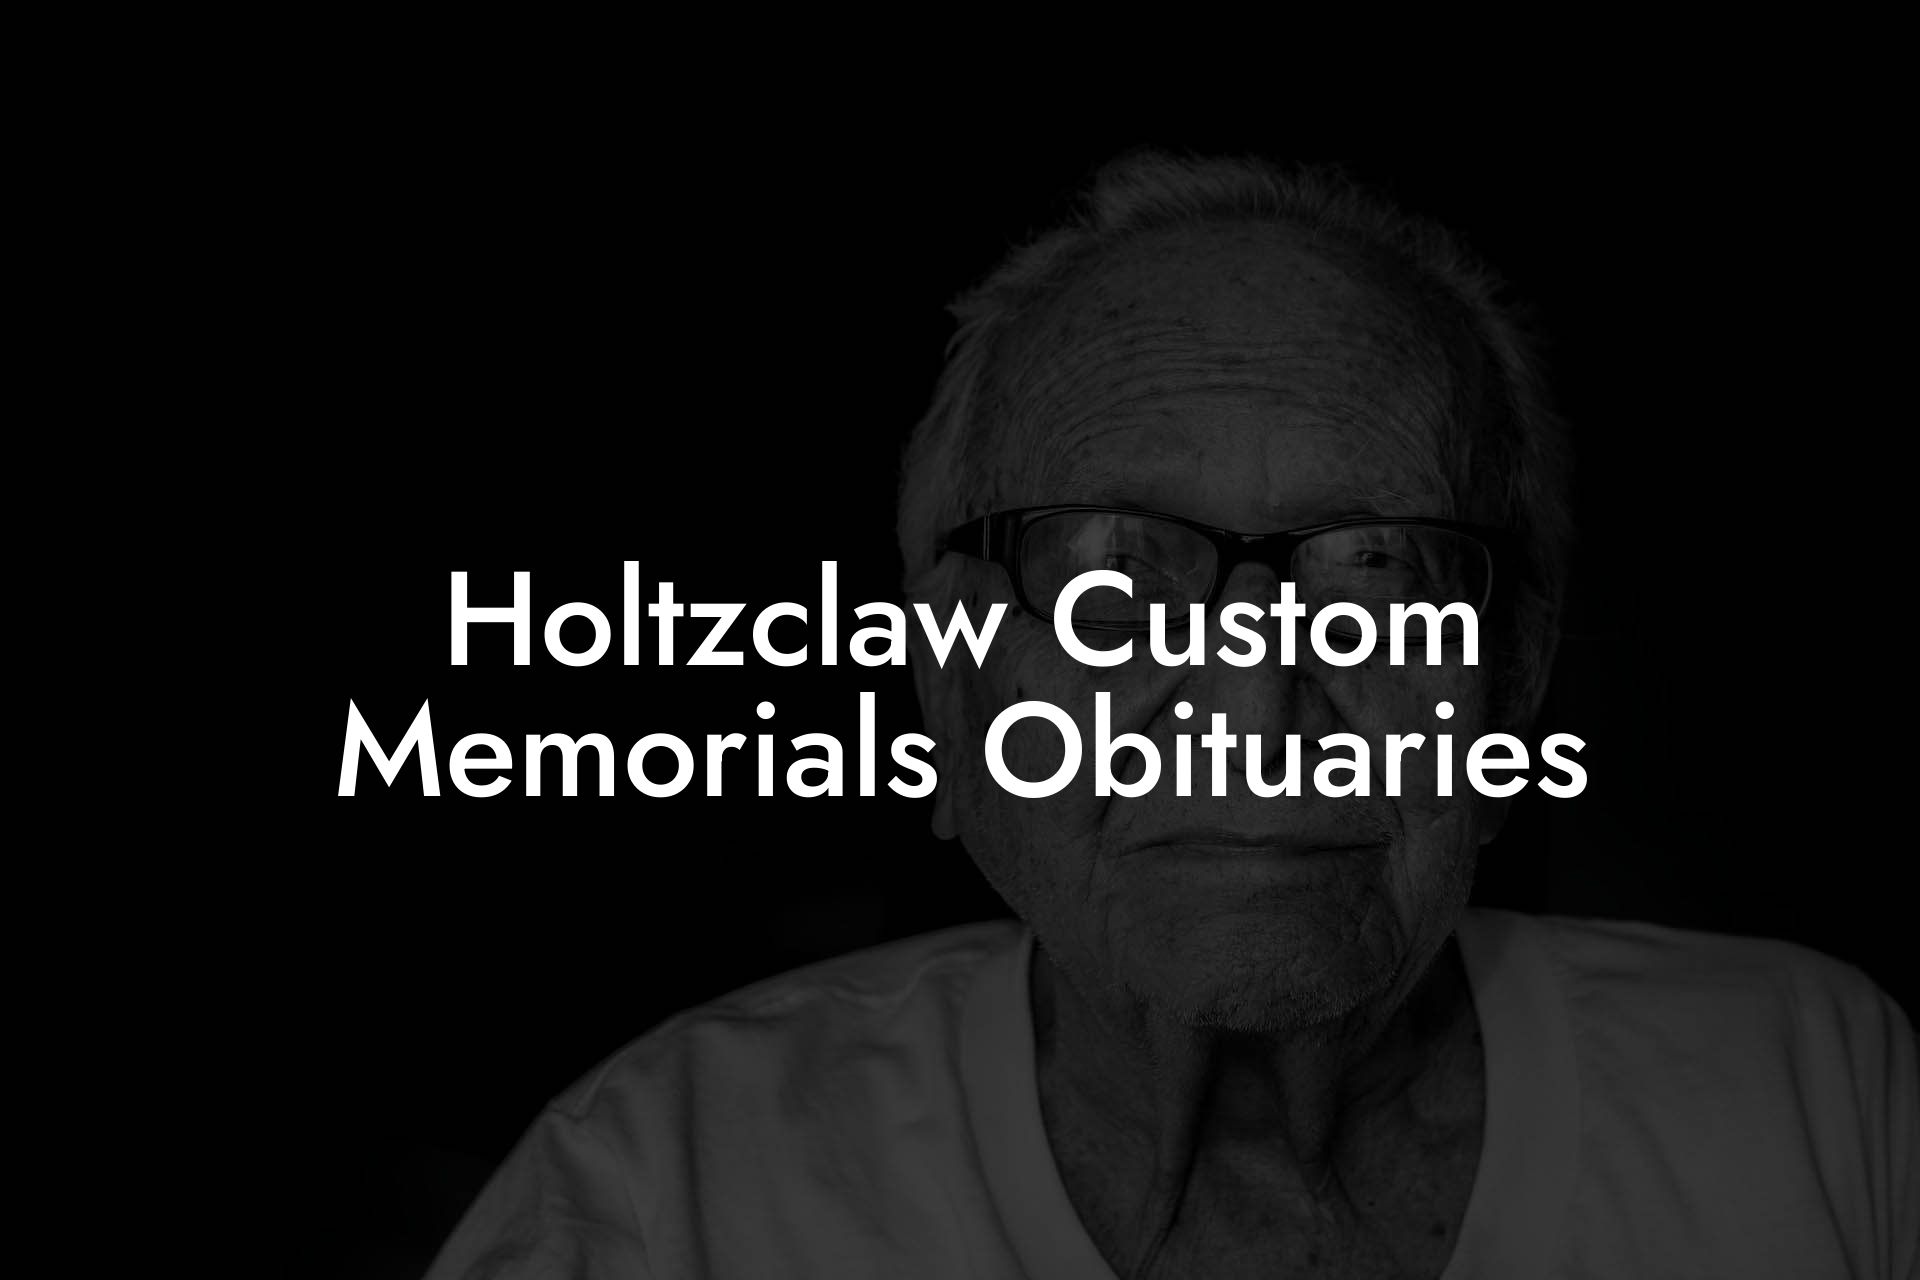 Holtzclaw Custom Memorials Obituaries